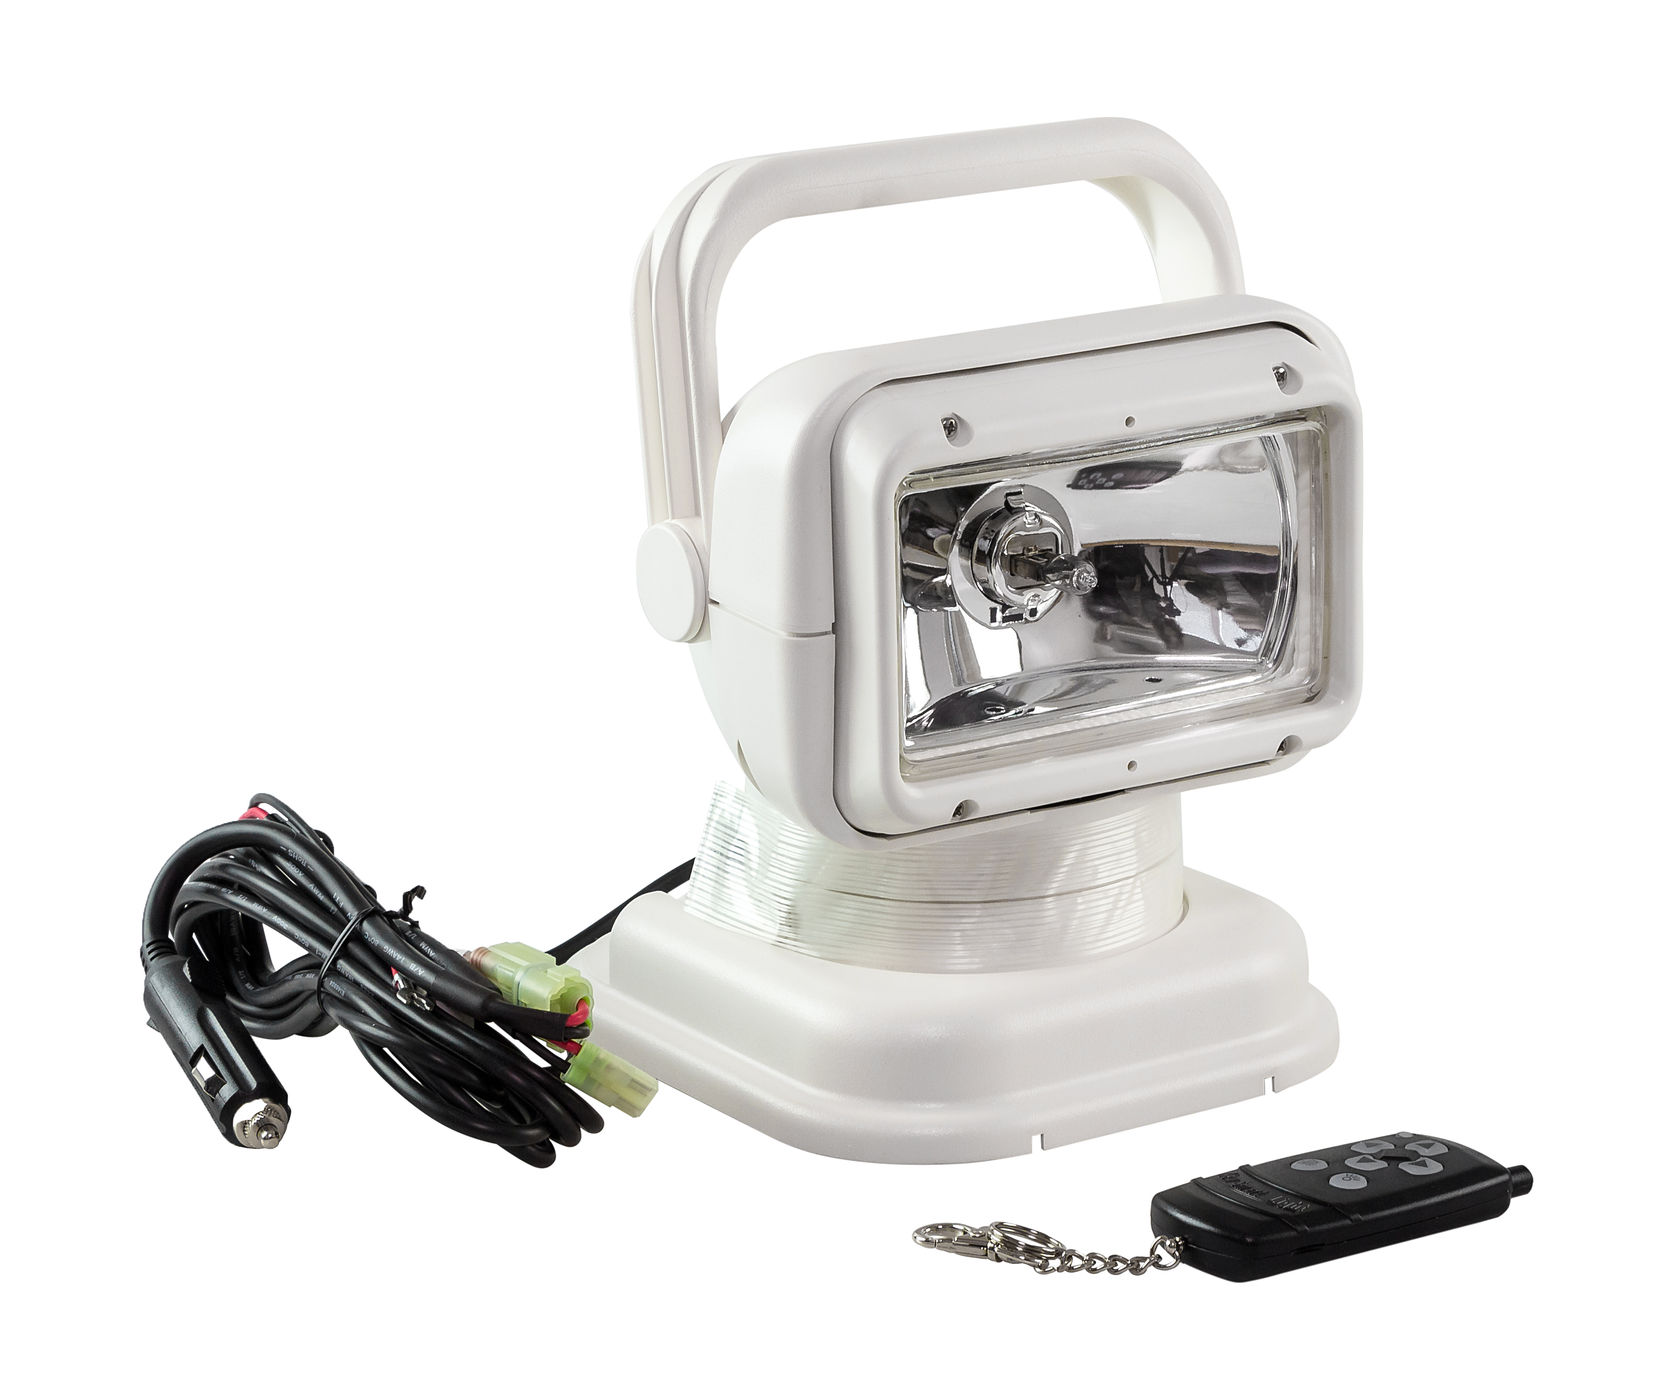 Прожектор с дистанционным управлением, белый корпус, галоген, брелок, модель 950 Allremote SL001AWSD